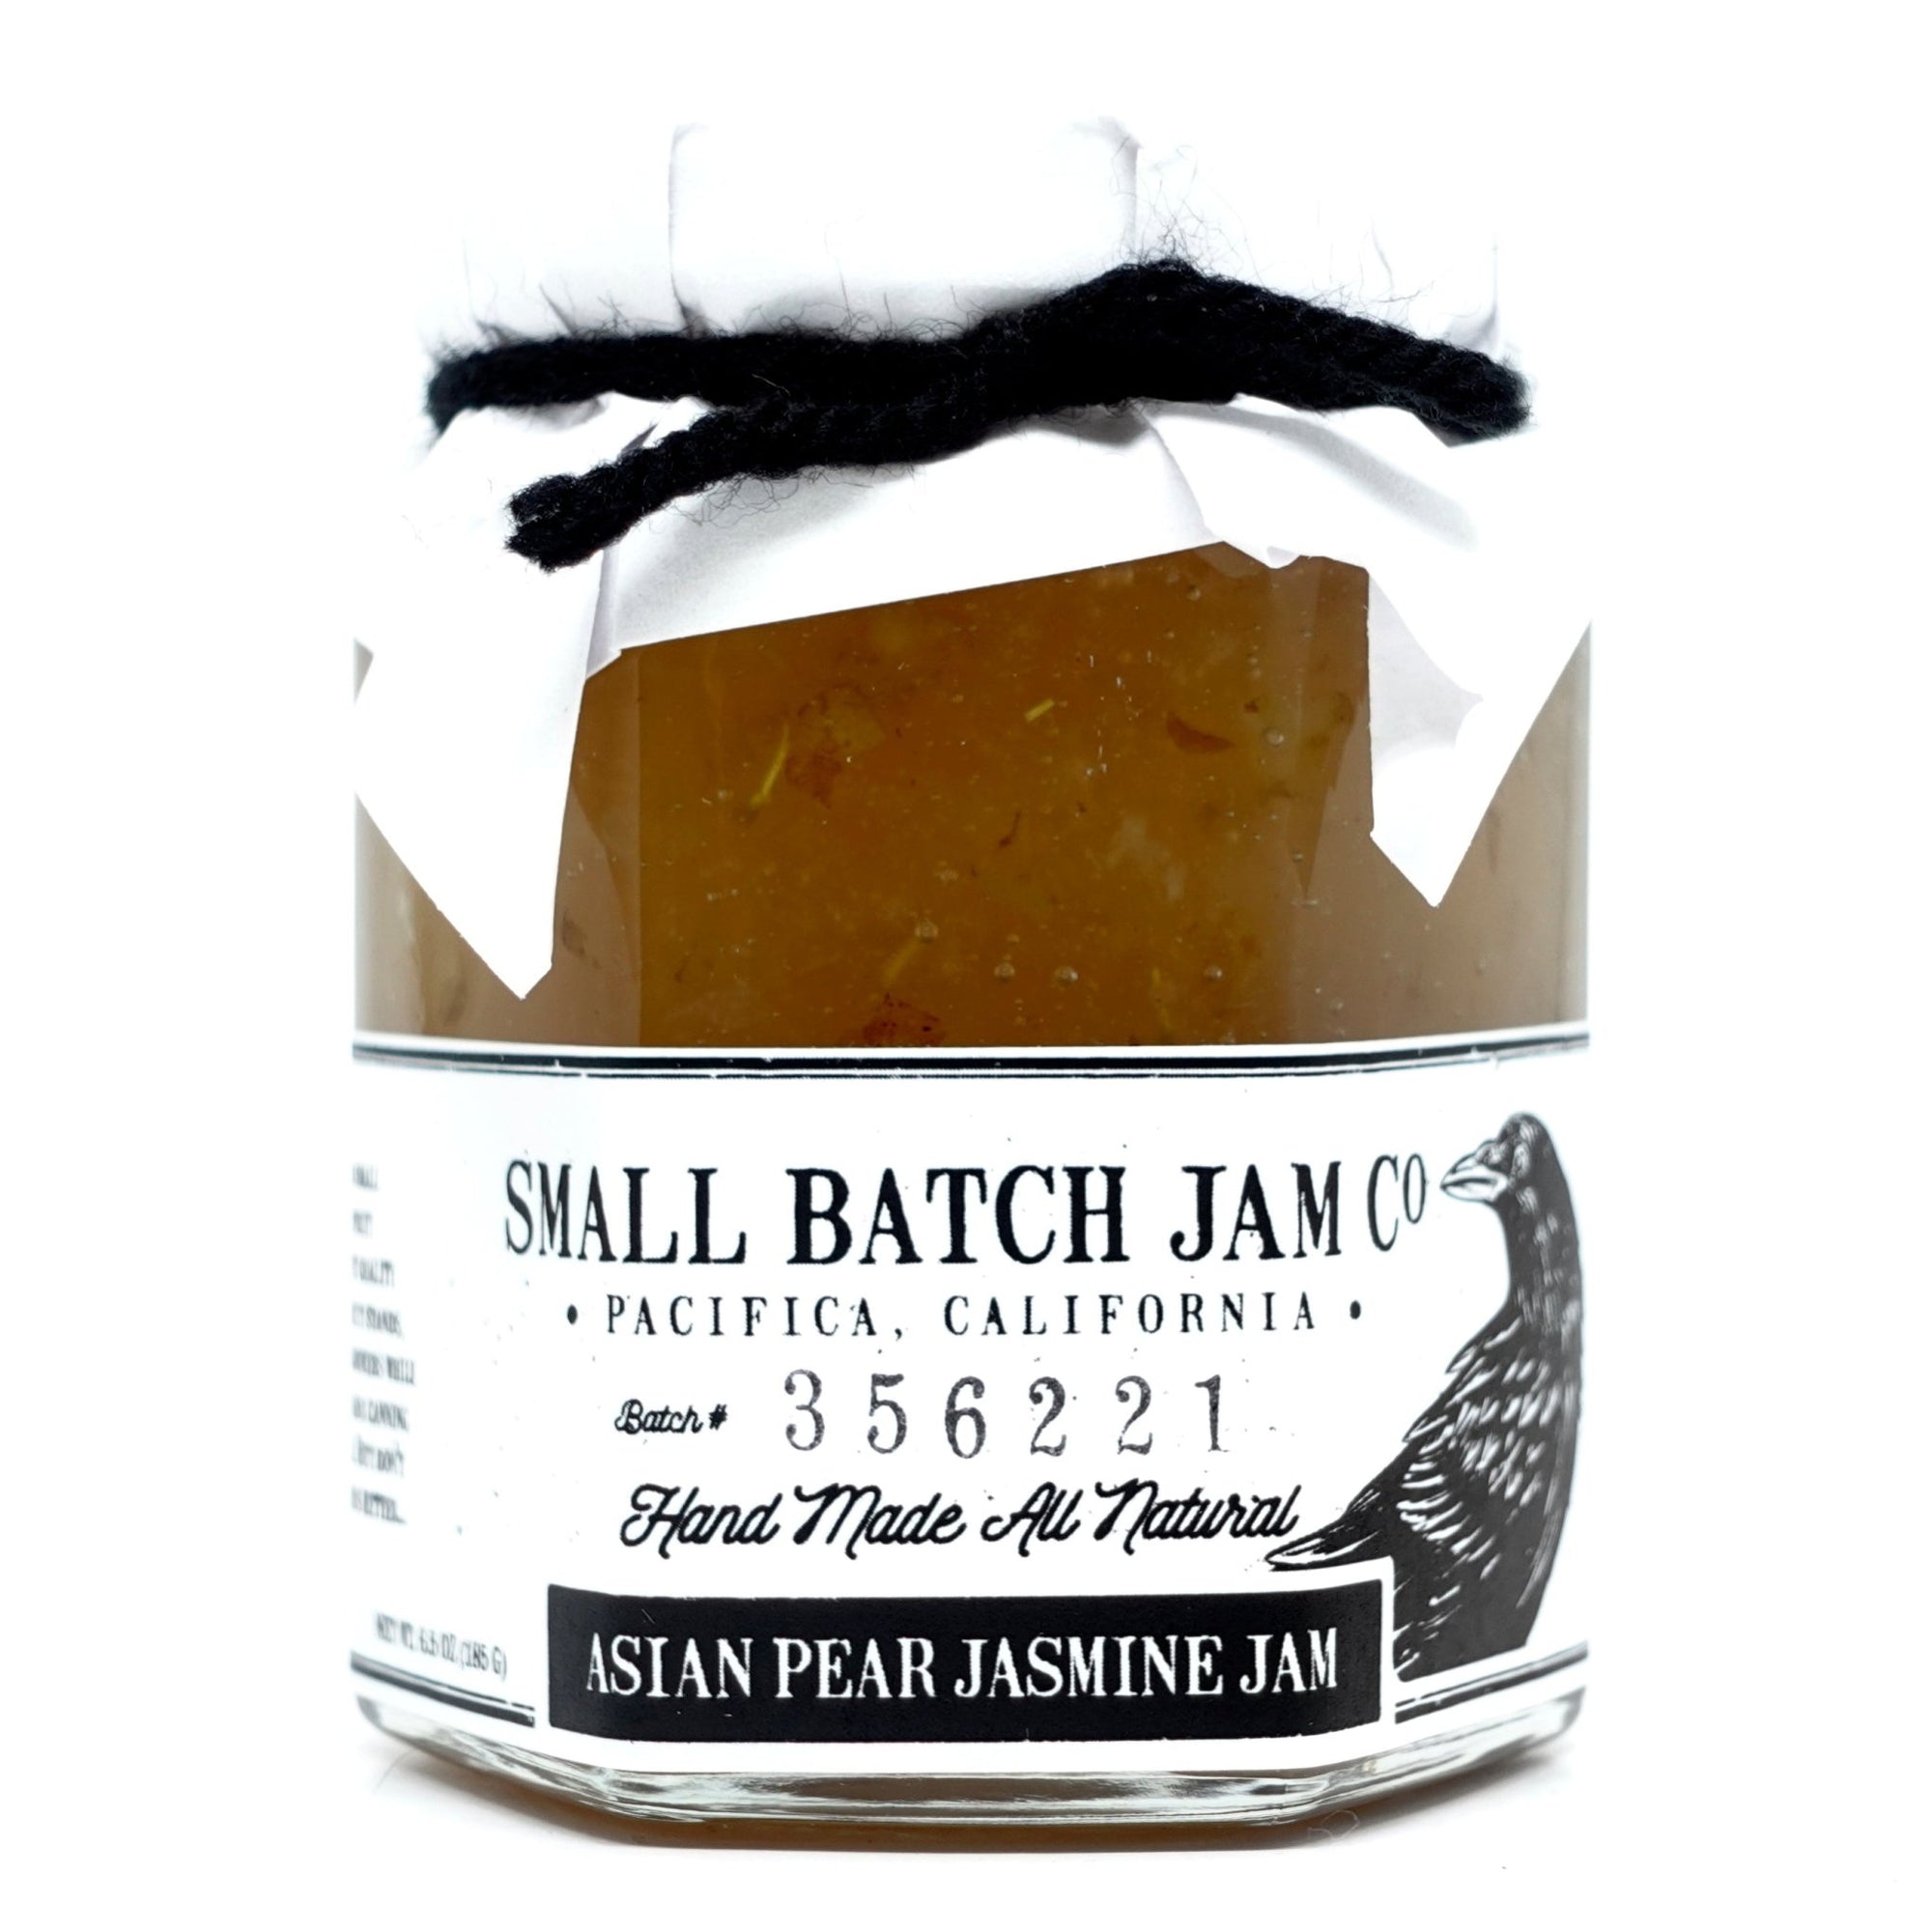 Asian Pear Jasmine Jam - Small Batch Jam Co